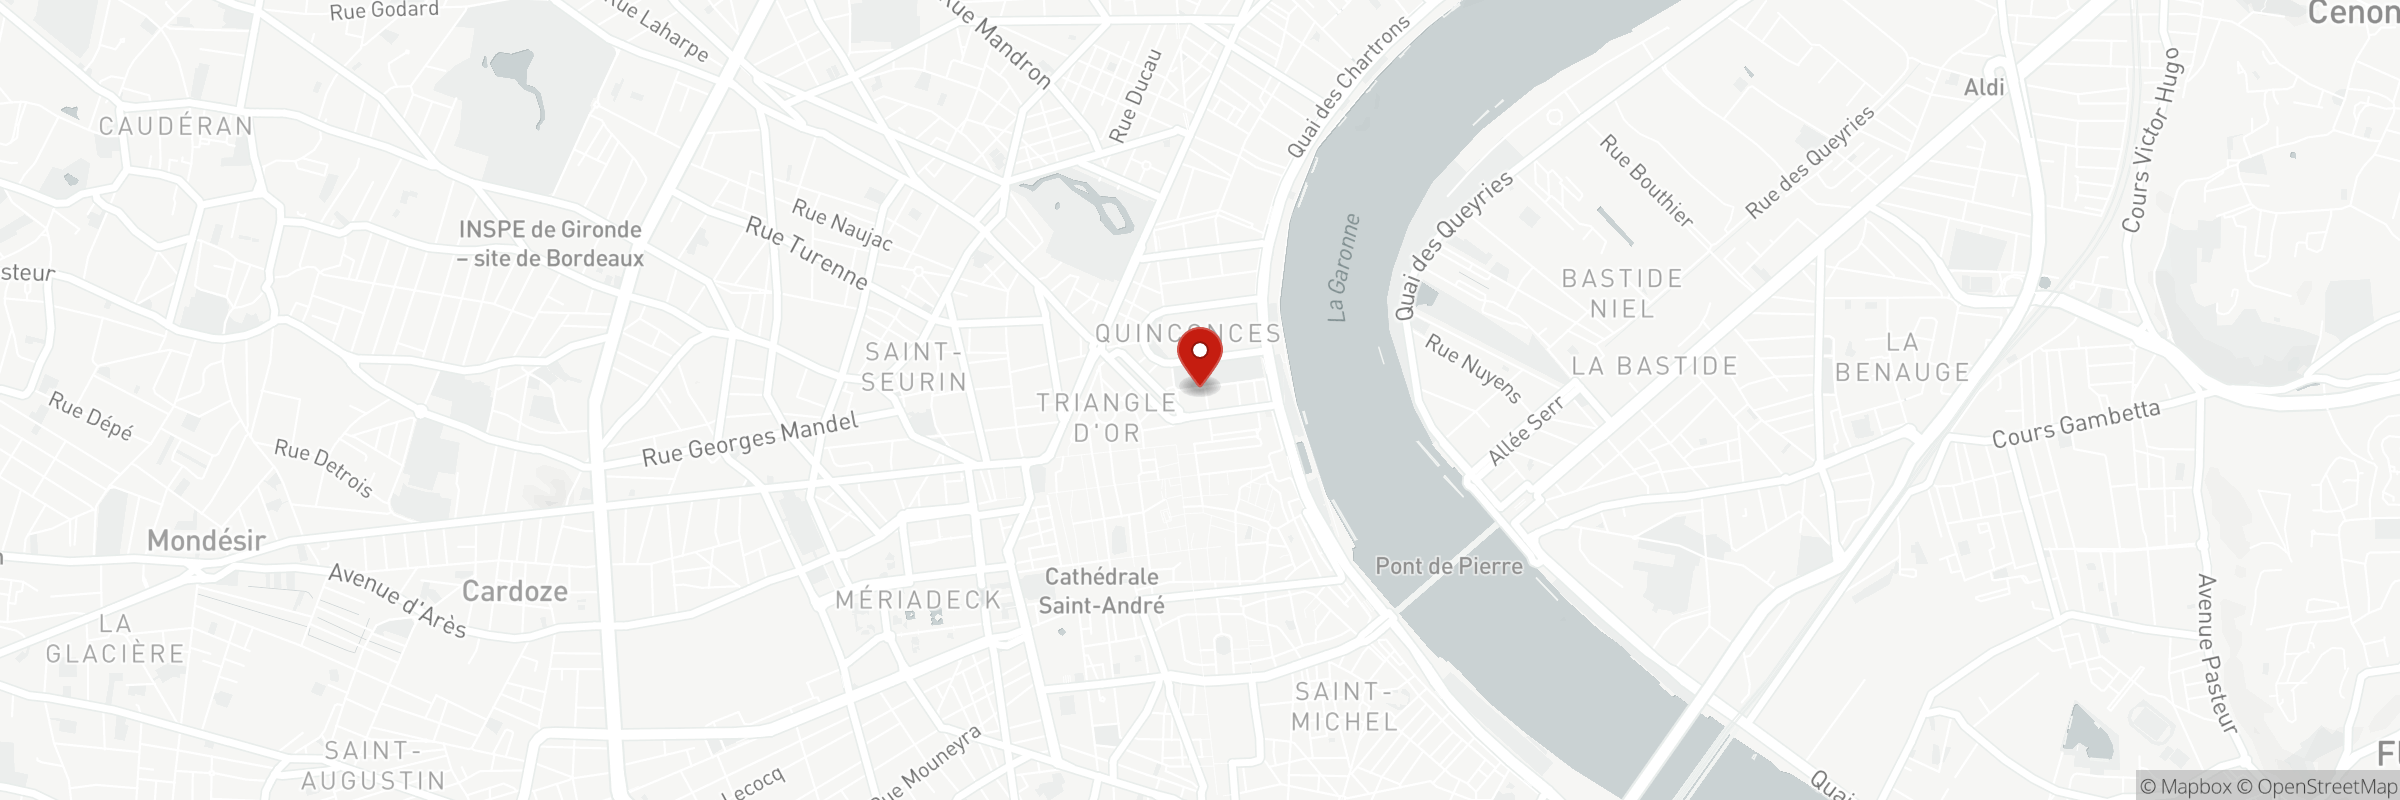 Die Karte zeigt die Adresse von Brasserie l'Orleans